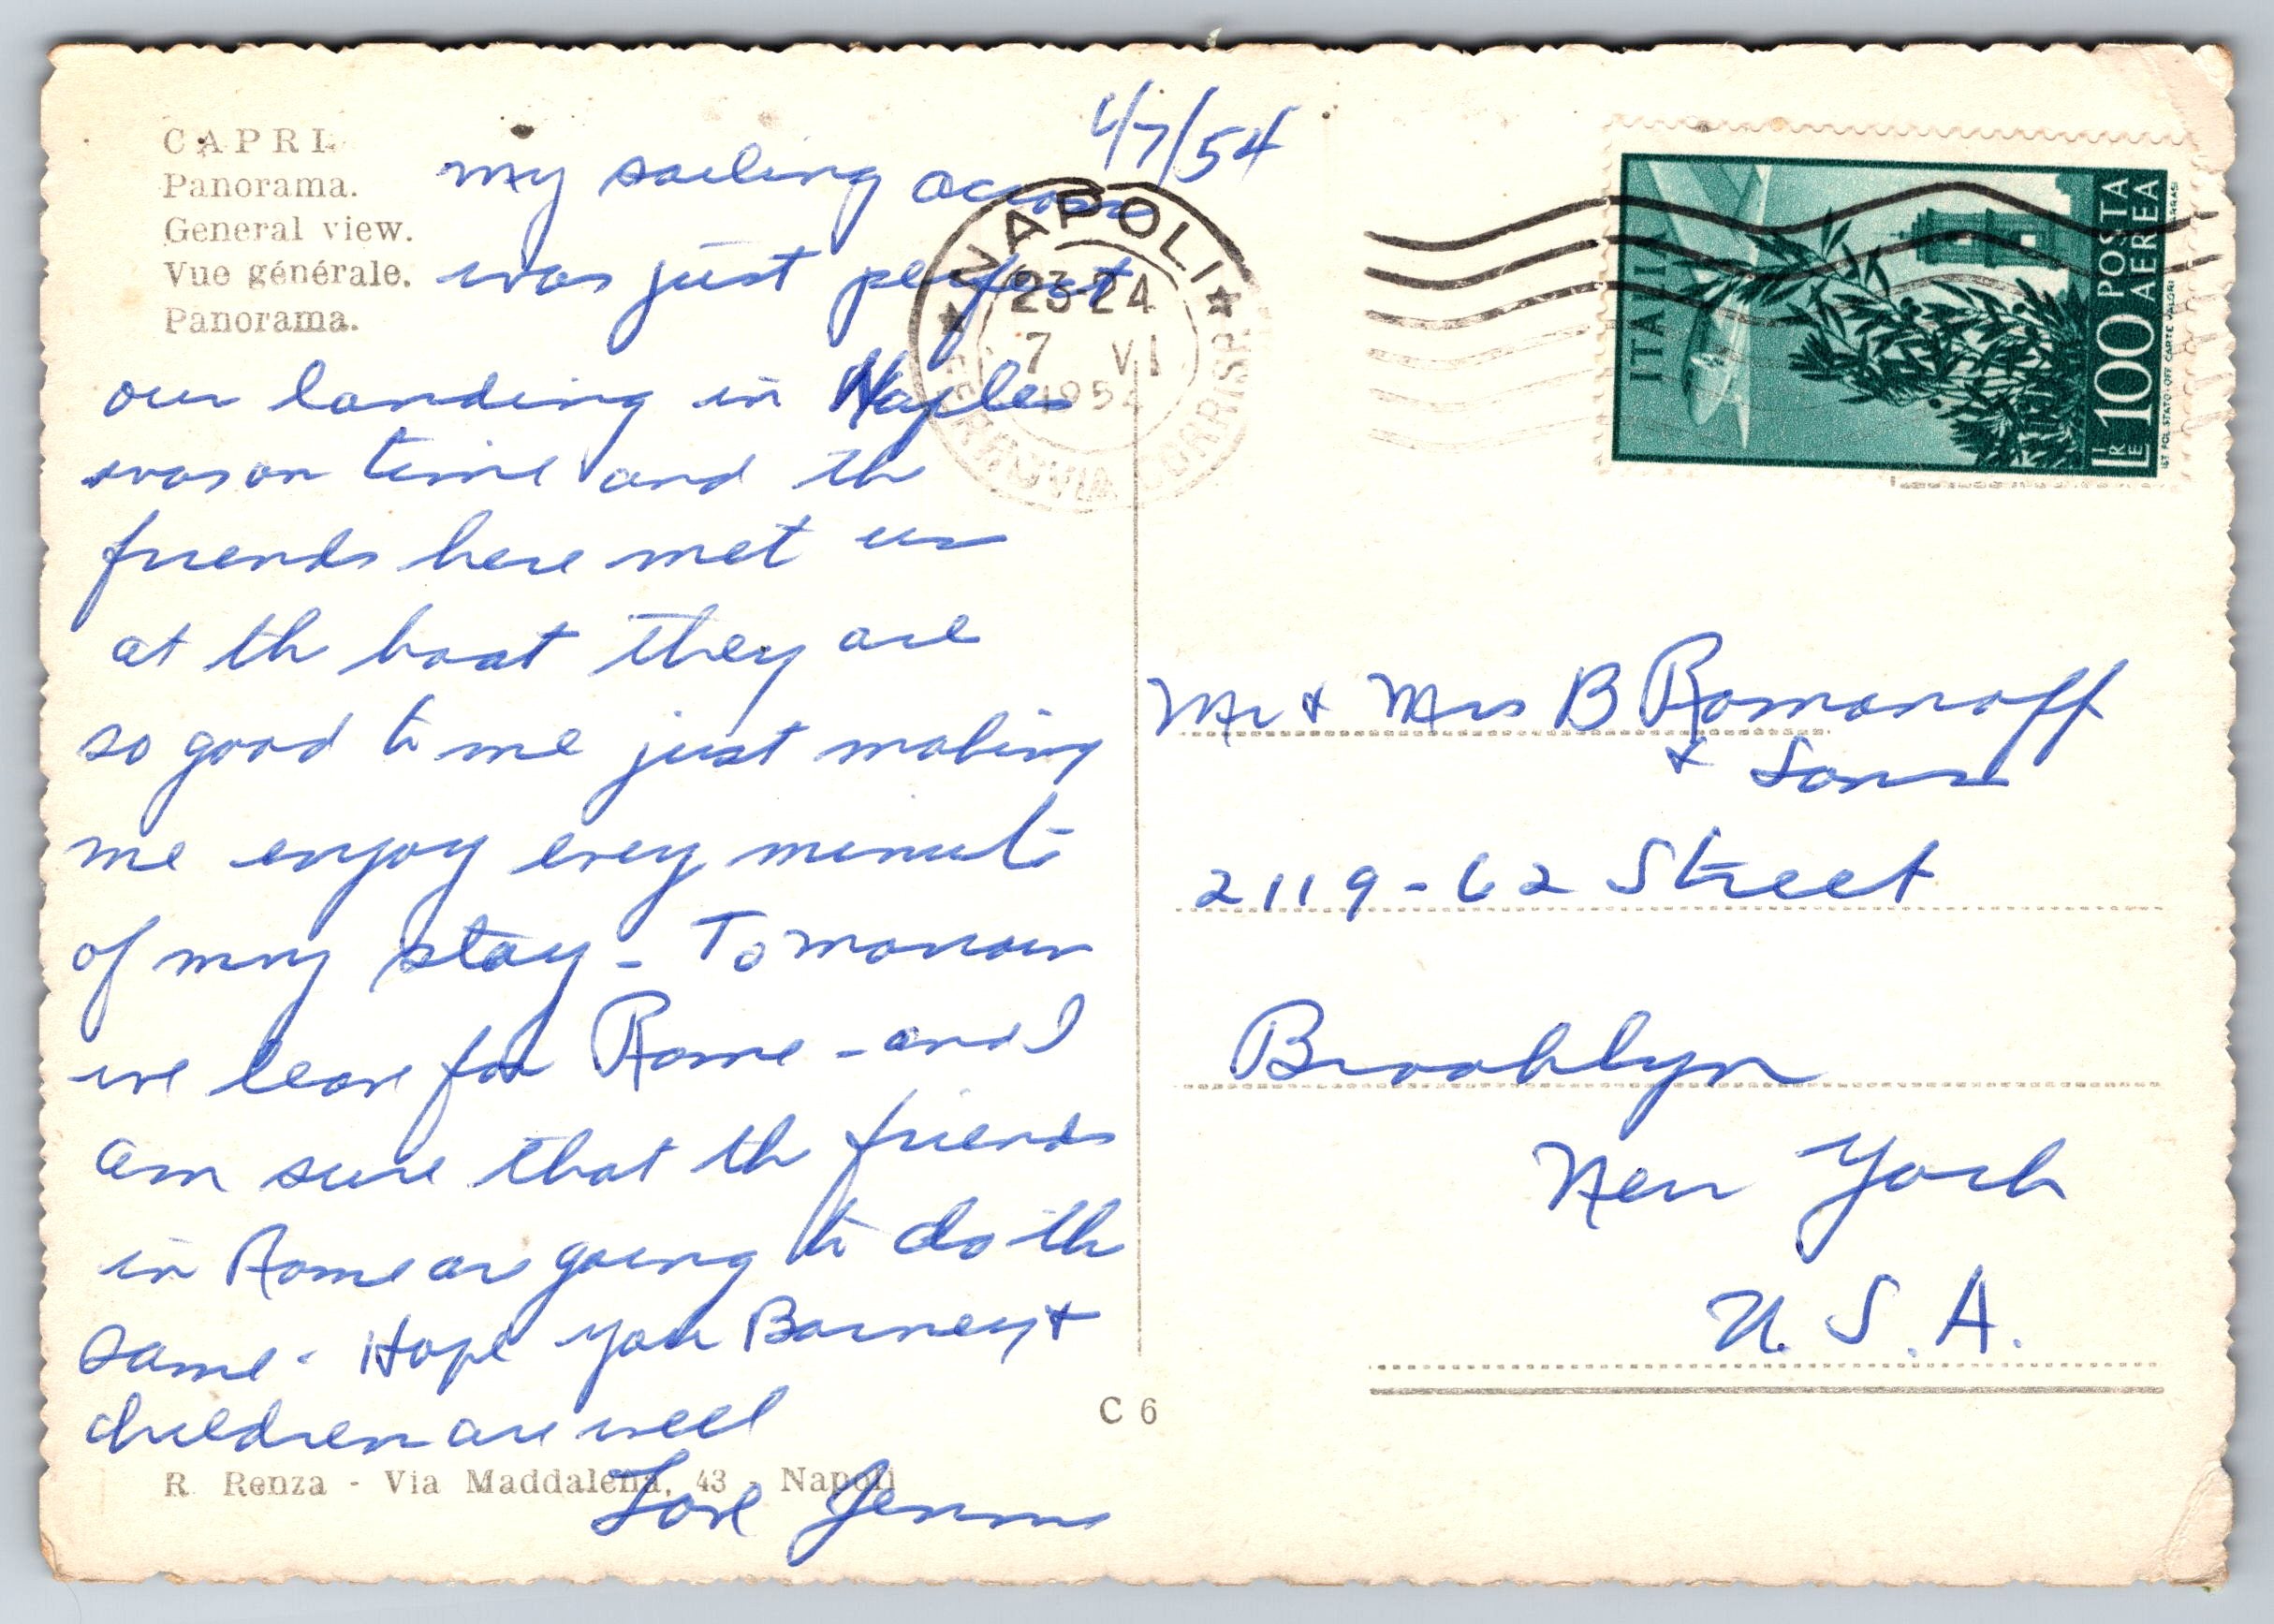 Capri Panorama View, USA, Vintage Post Card